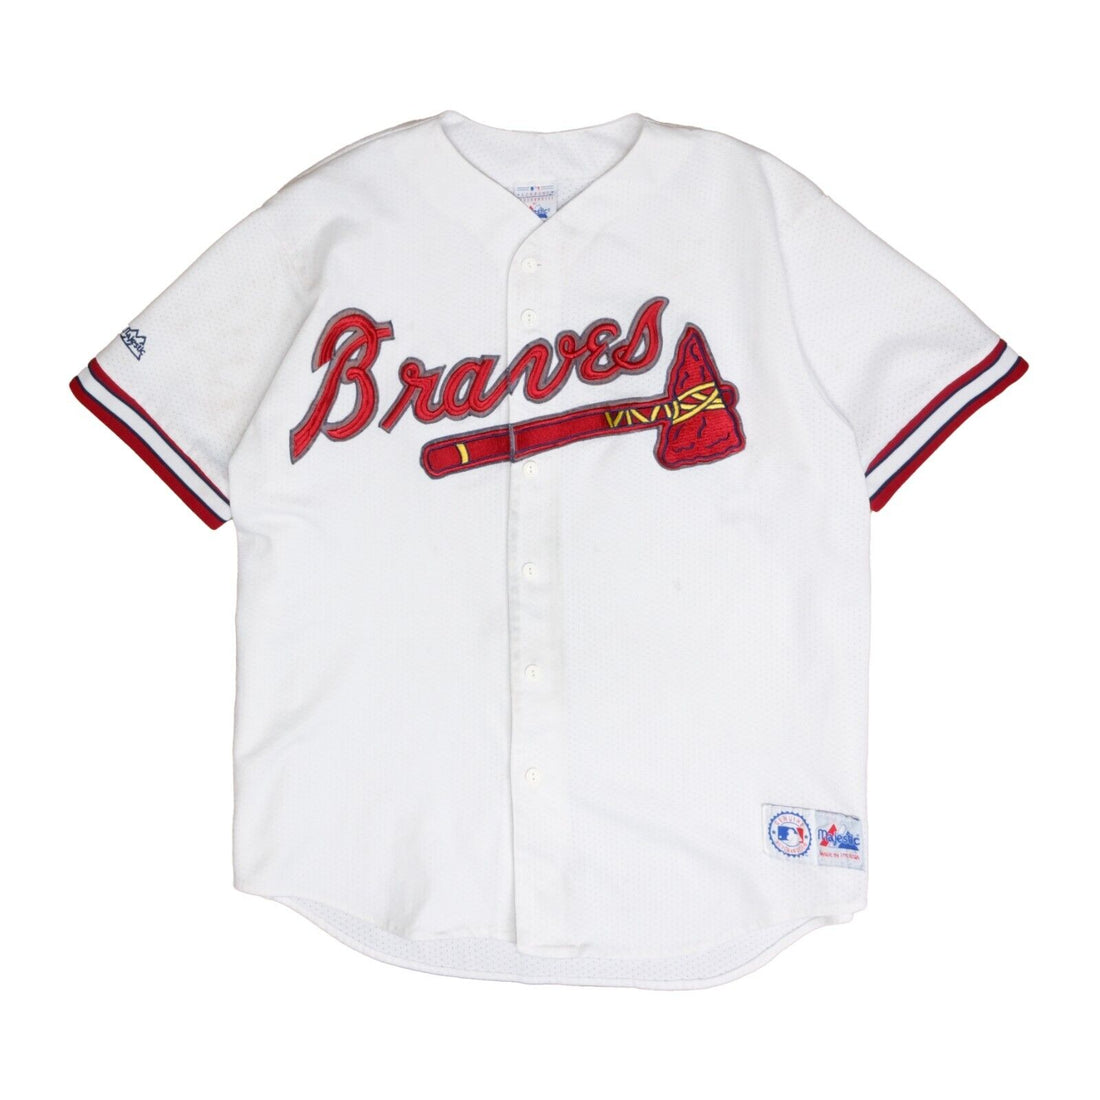 Vintage Atlanta Braves MLB Baseball Jersey White XL